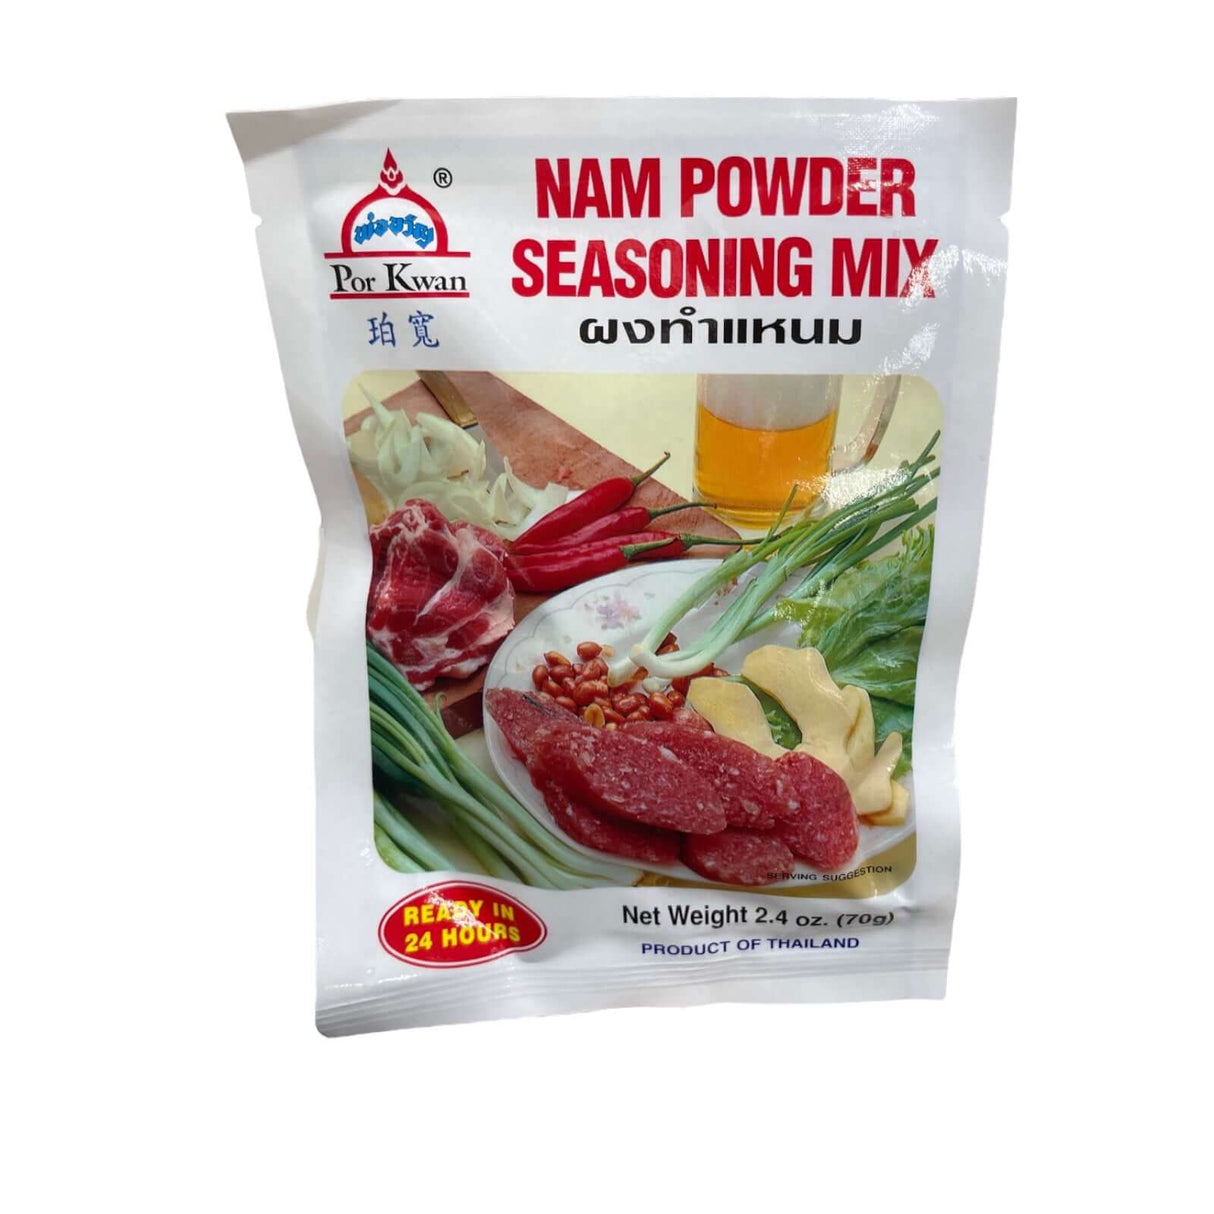 Por Kwan Nam Powder Seasoning Mix